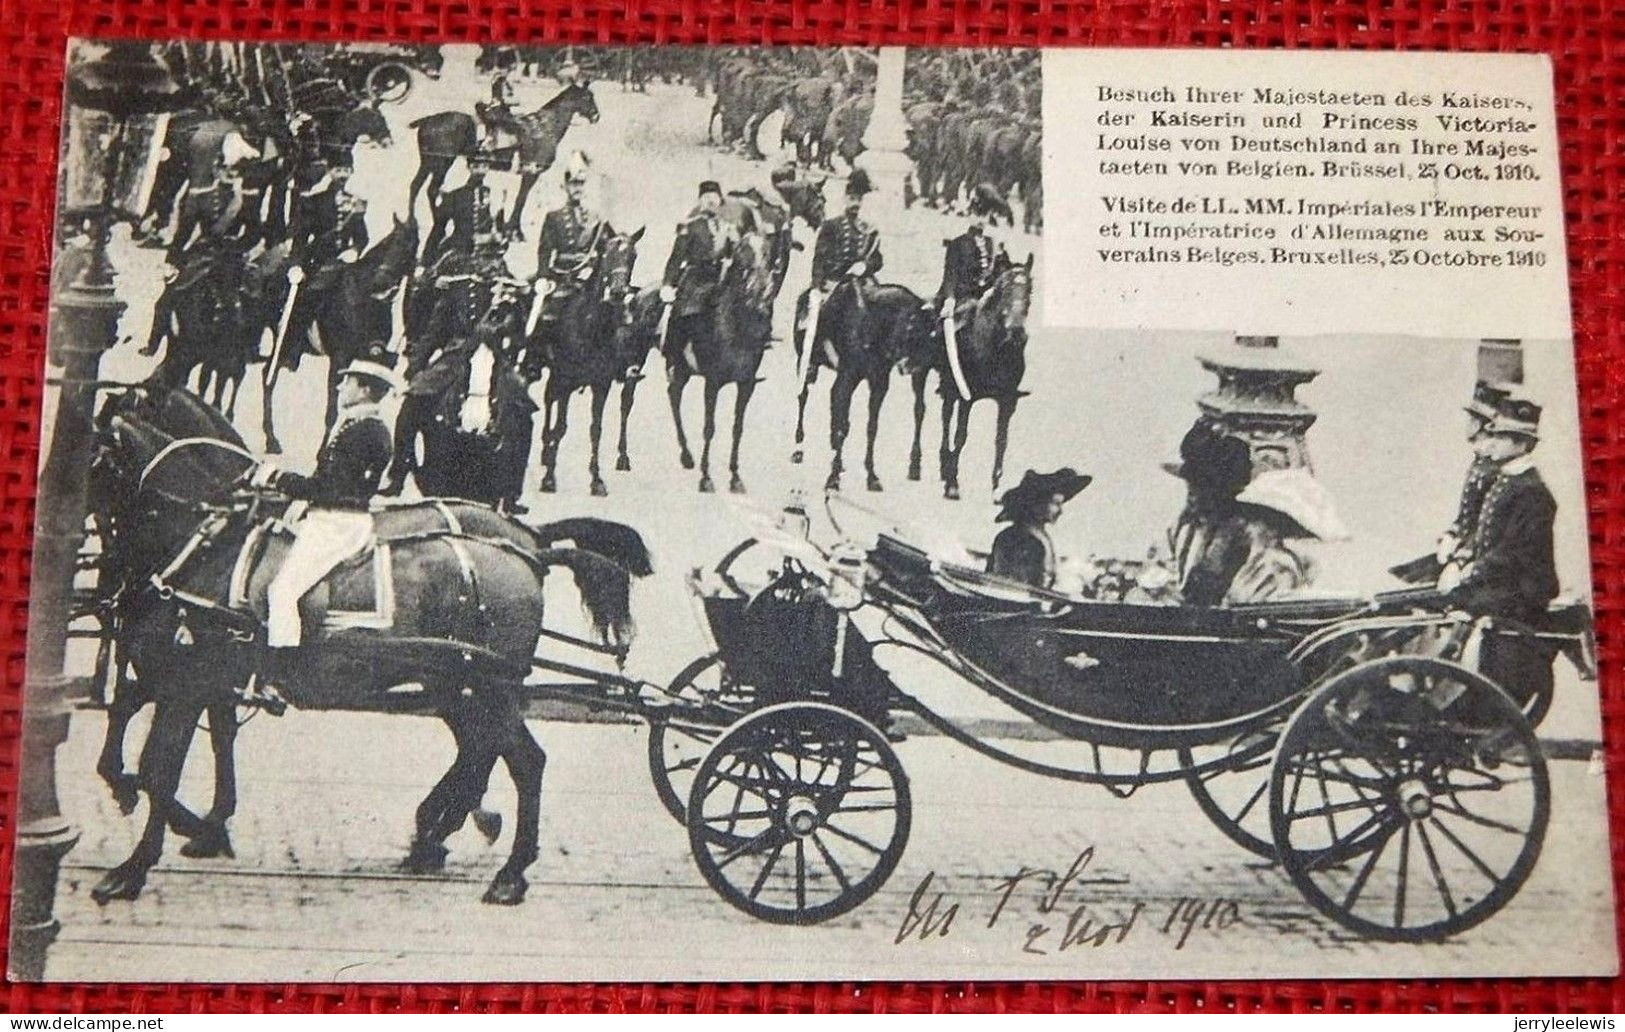 BRUXELLES   Octobre  1910 -  Visite De L'Empereur Et L'Impératrice D'Allemagne Aux Souverains Belges - - Festivals, Events